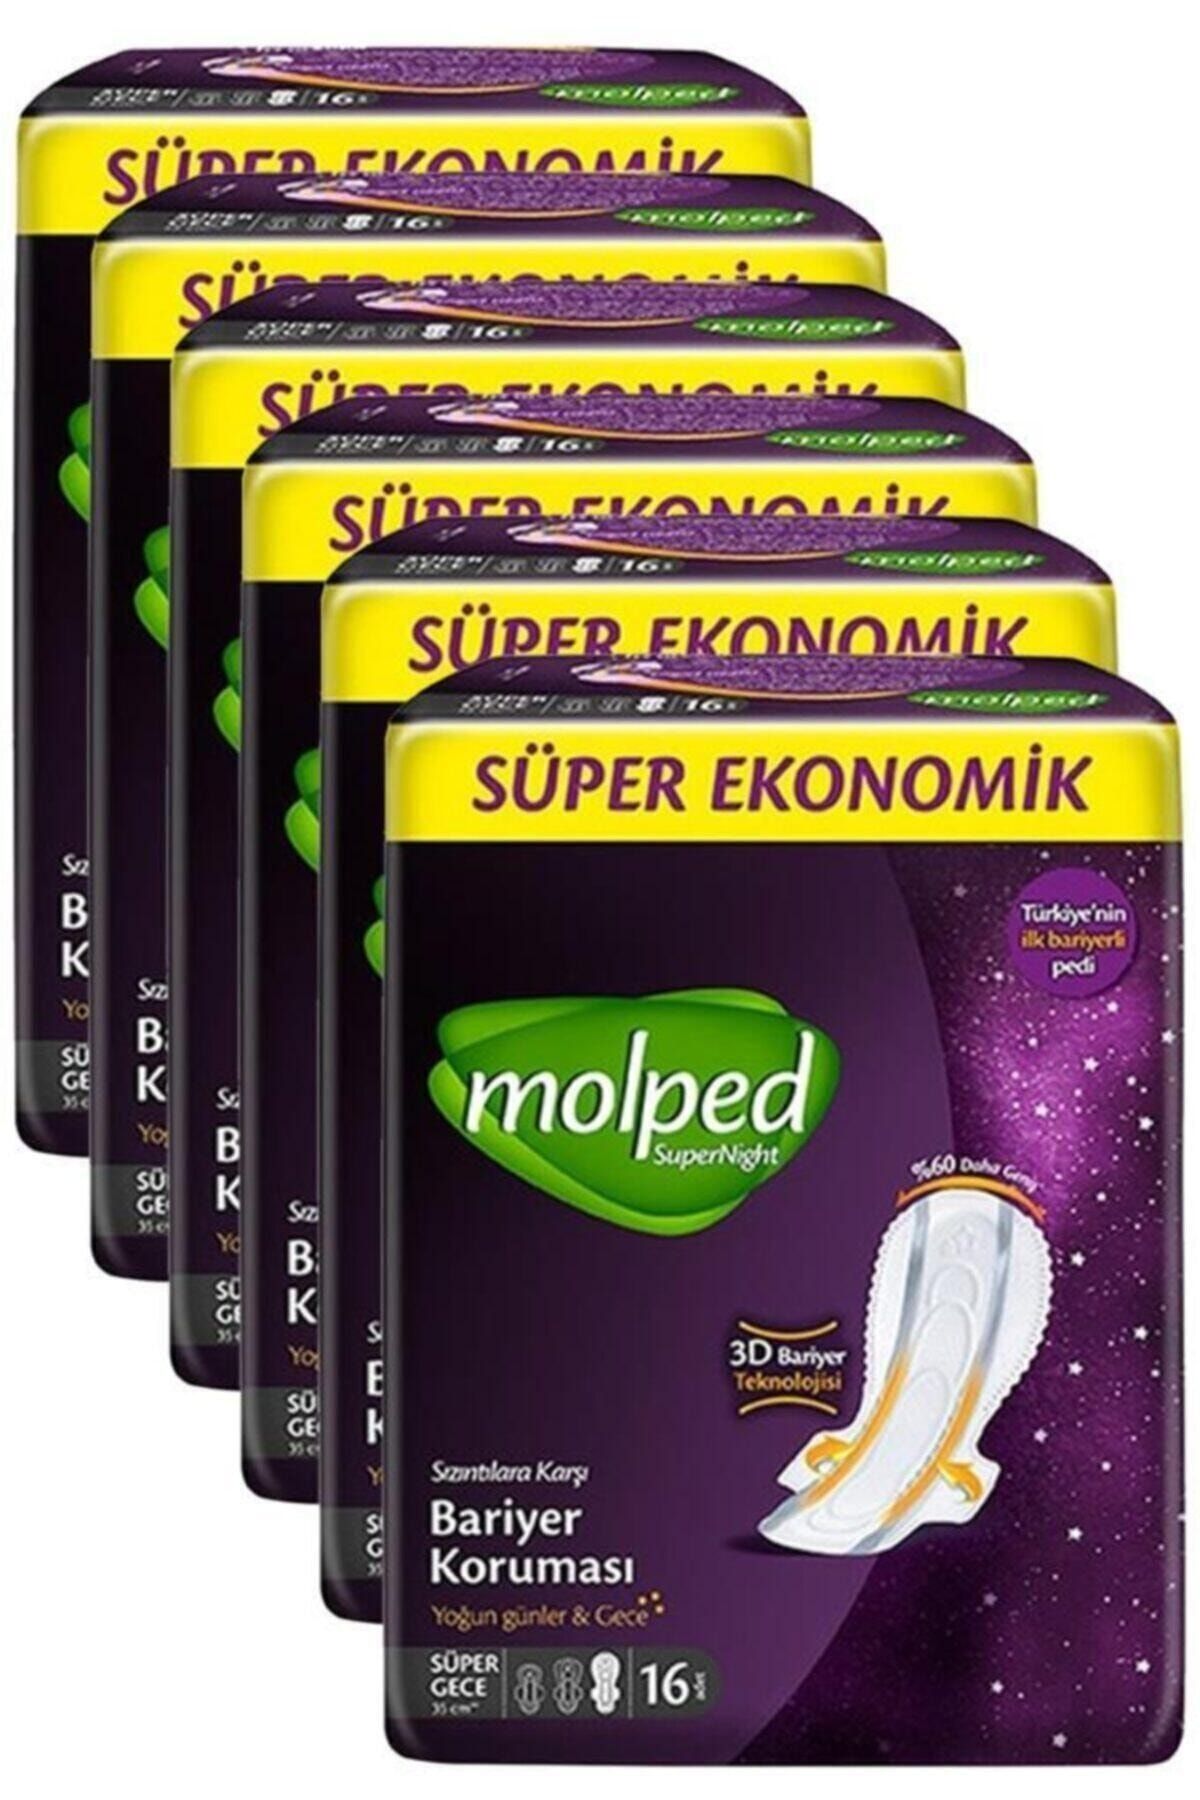 Molped Super Night Süper Gece Avantaj Paketi 16'lı 6 Adet